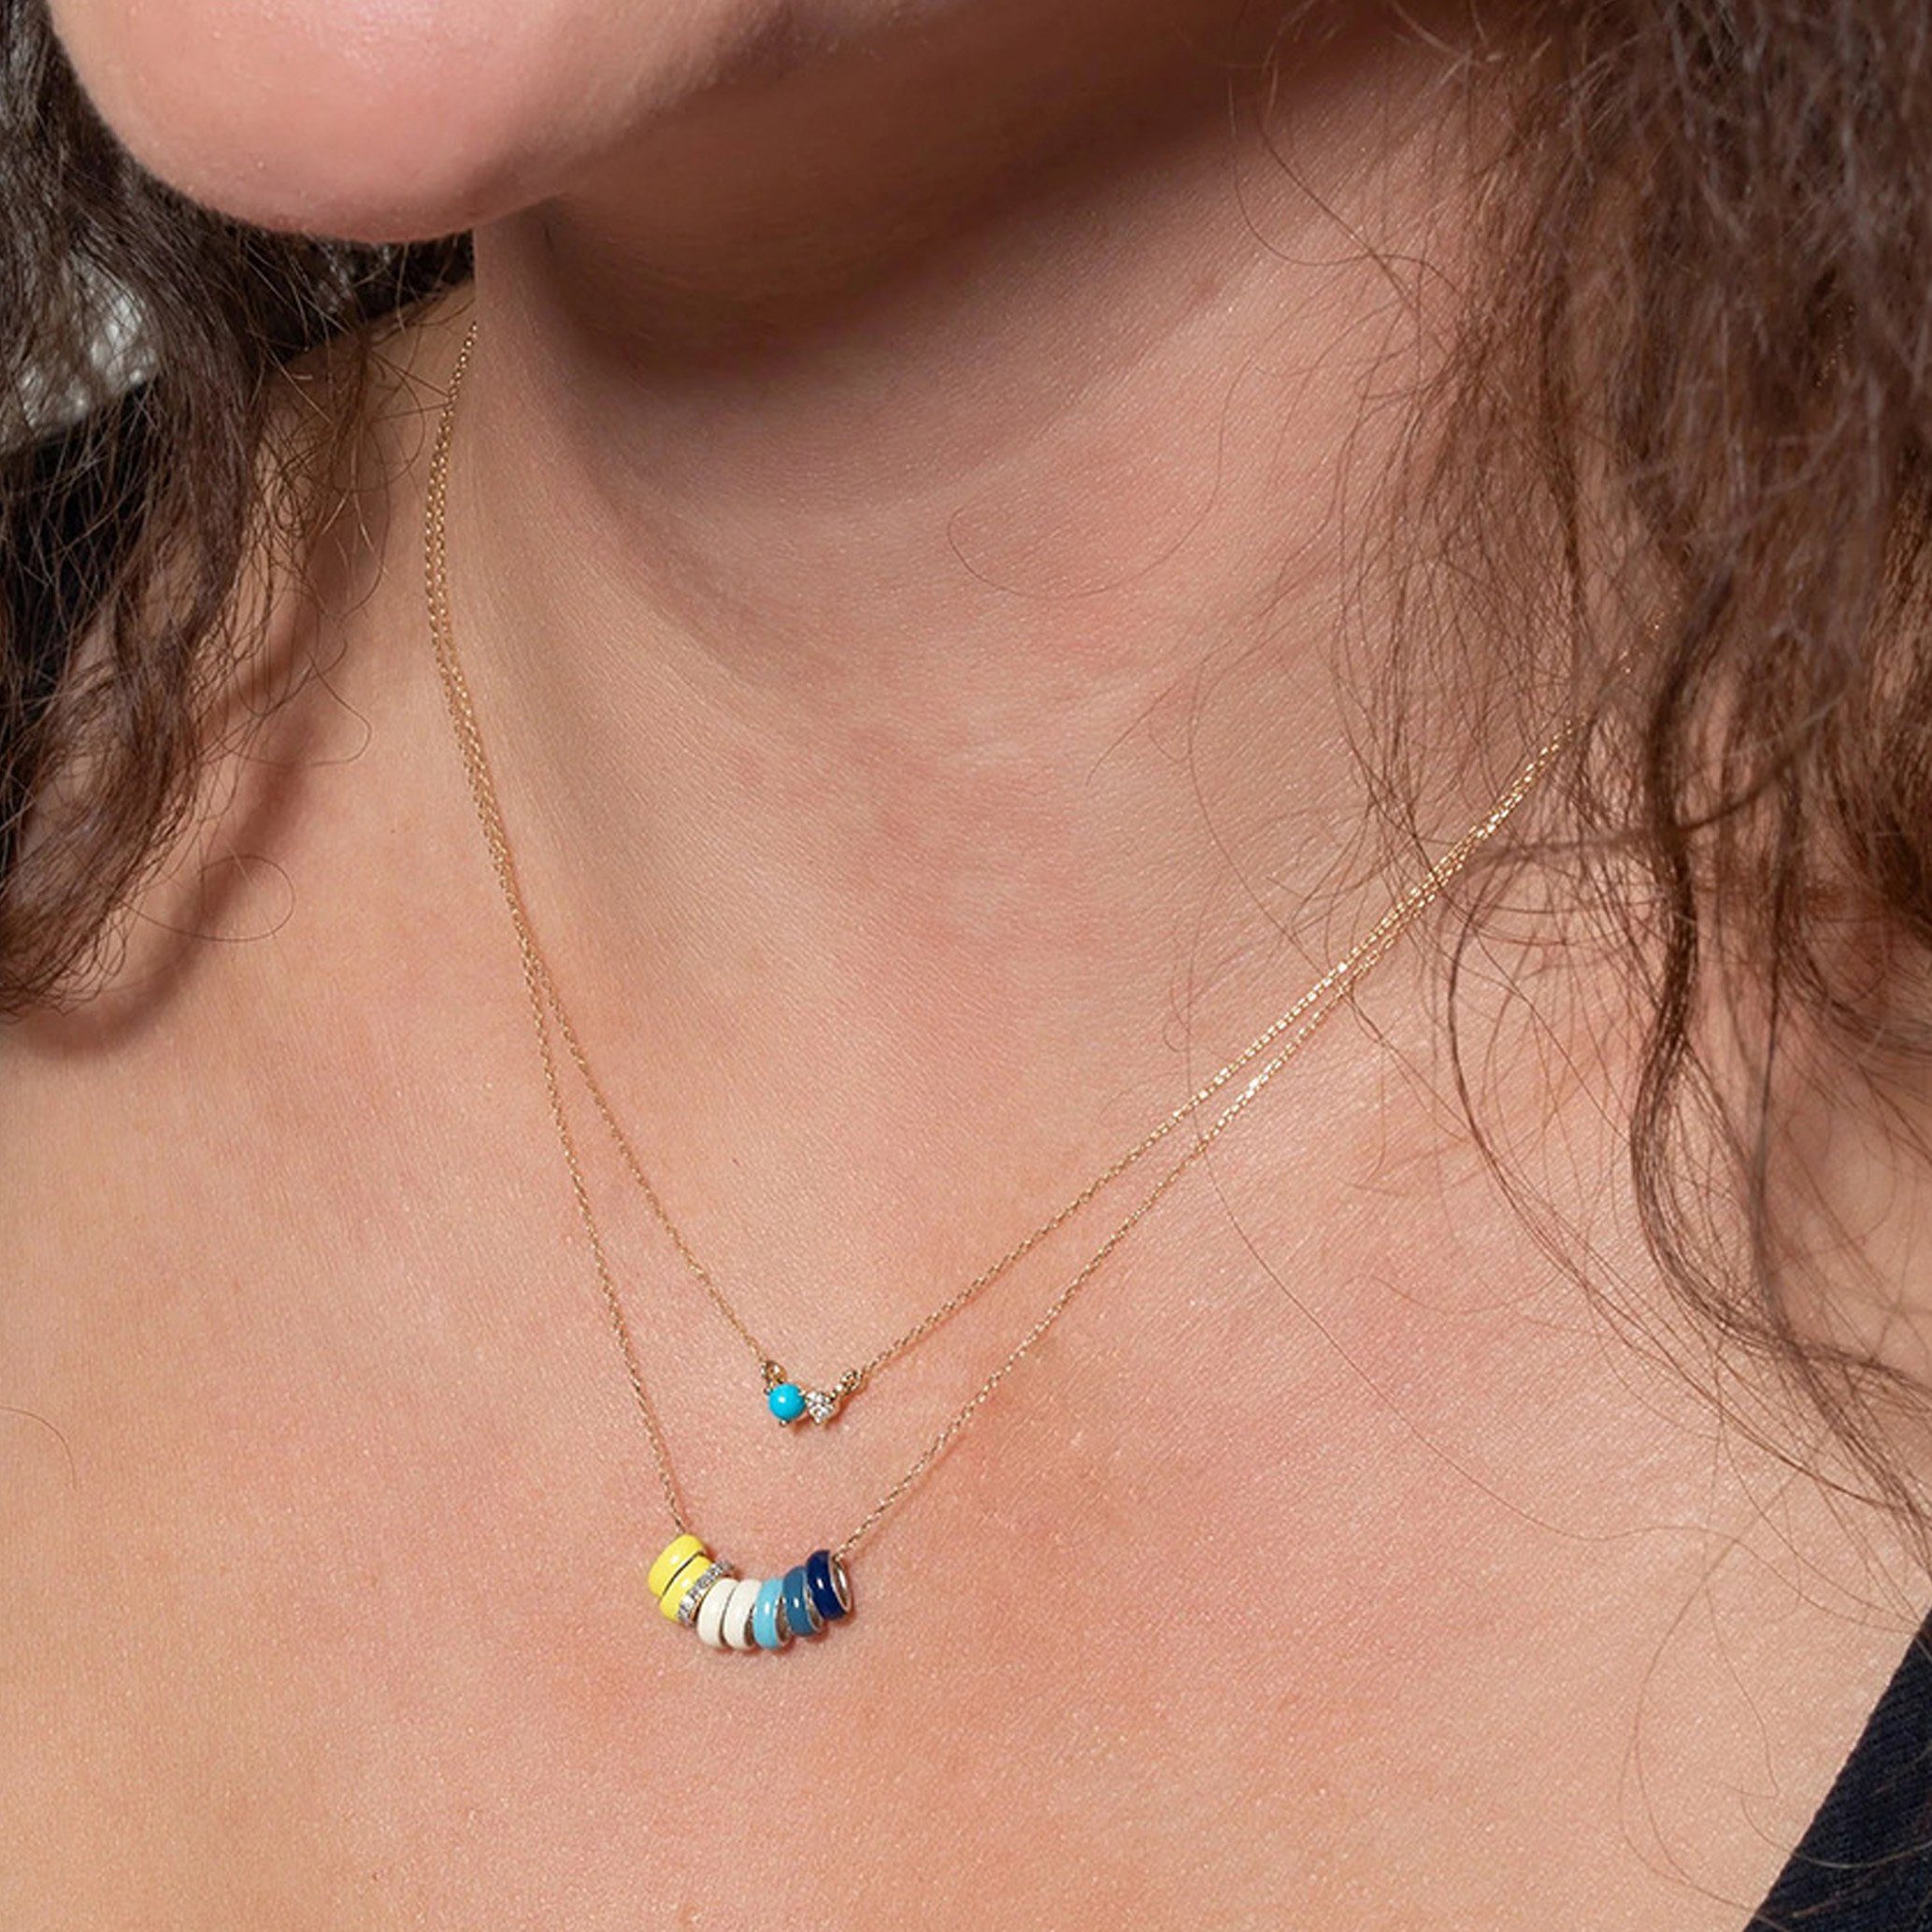 Halskette Silber GOLDEN minimalistische 925 Charm-Kette Sterling Halskette, Türkise Mond